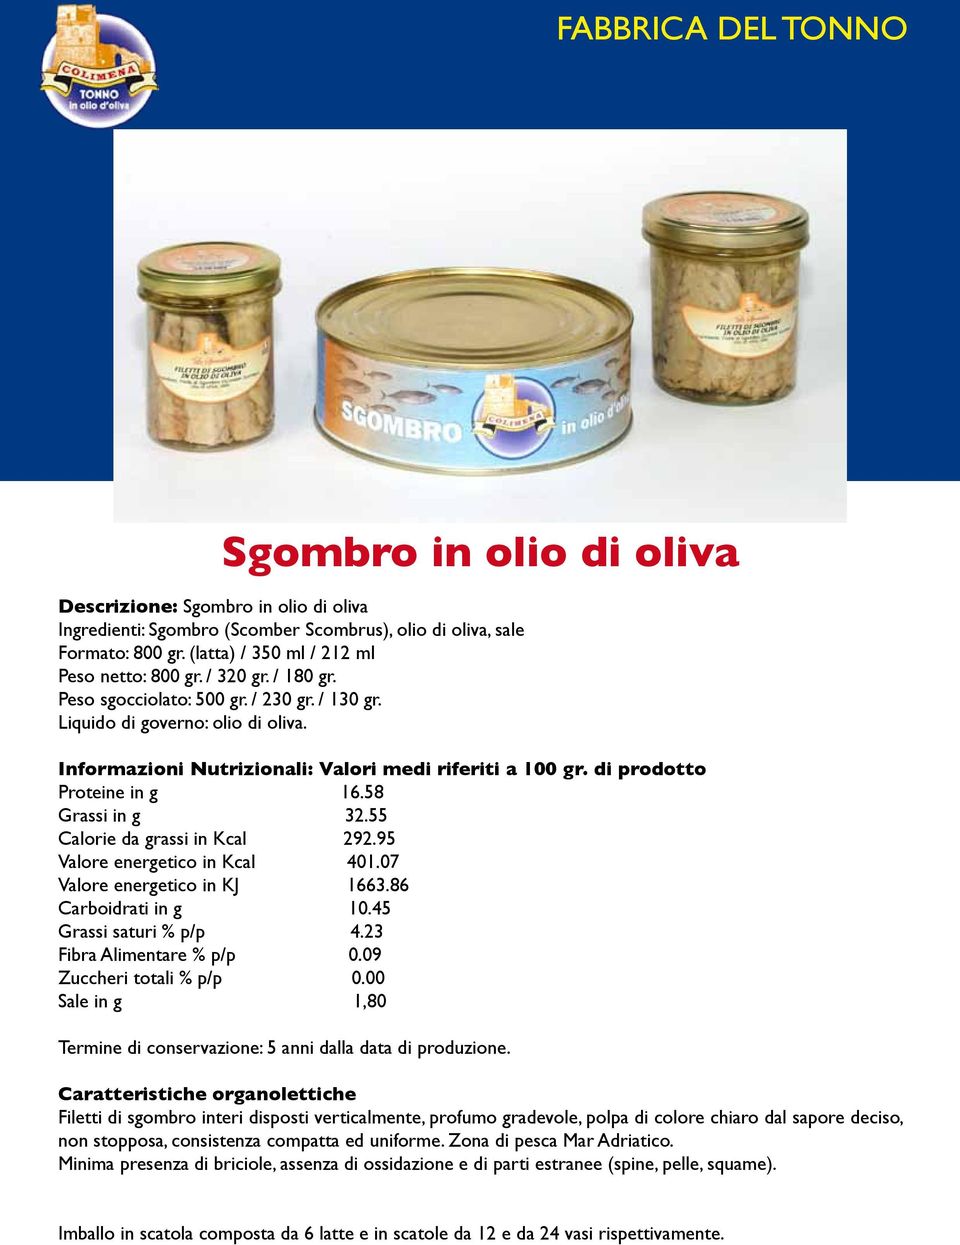 86 Carboidrati in g 10.45 Grassi saturi % p/p 4.23 Fibra Alimentare % p/p 0.09 Zuccheri totali % p/p 0.00 Sale in g 1,80 Termine di conservazione: 5 anni dalla data di produzione.